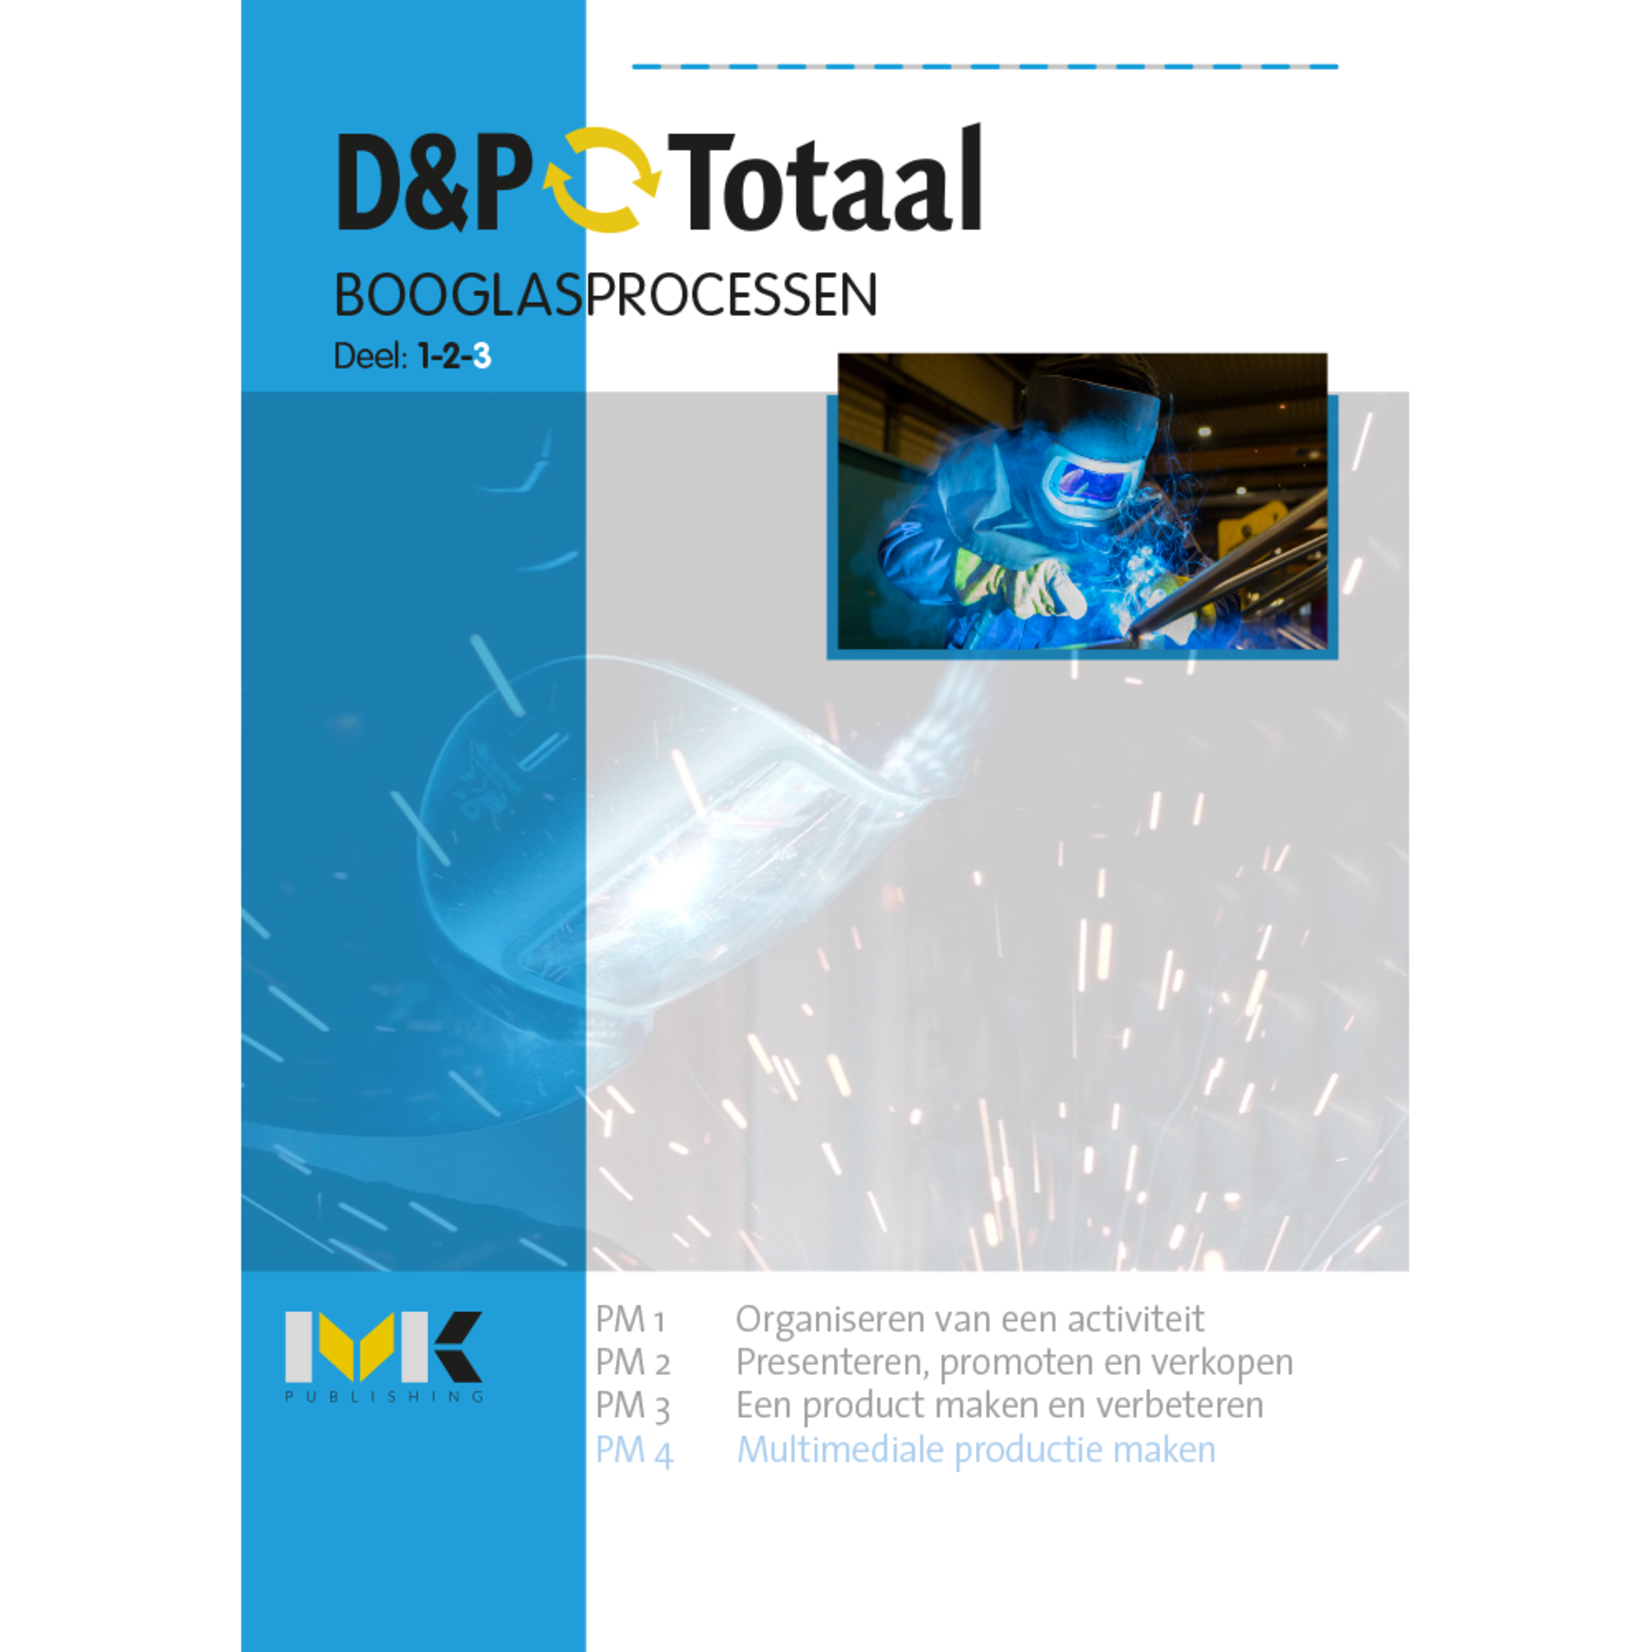 D&P-Totaal - PIE Booglasprocessen (PM4/1326)